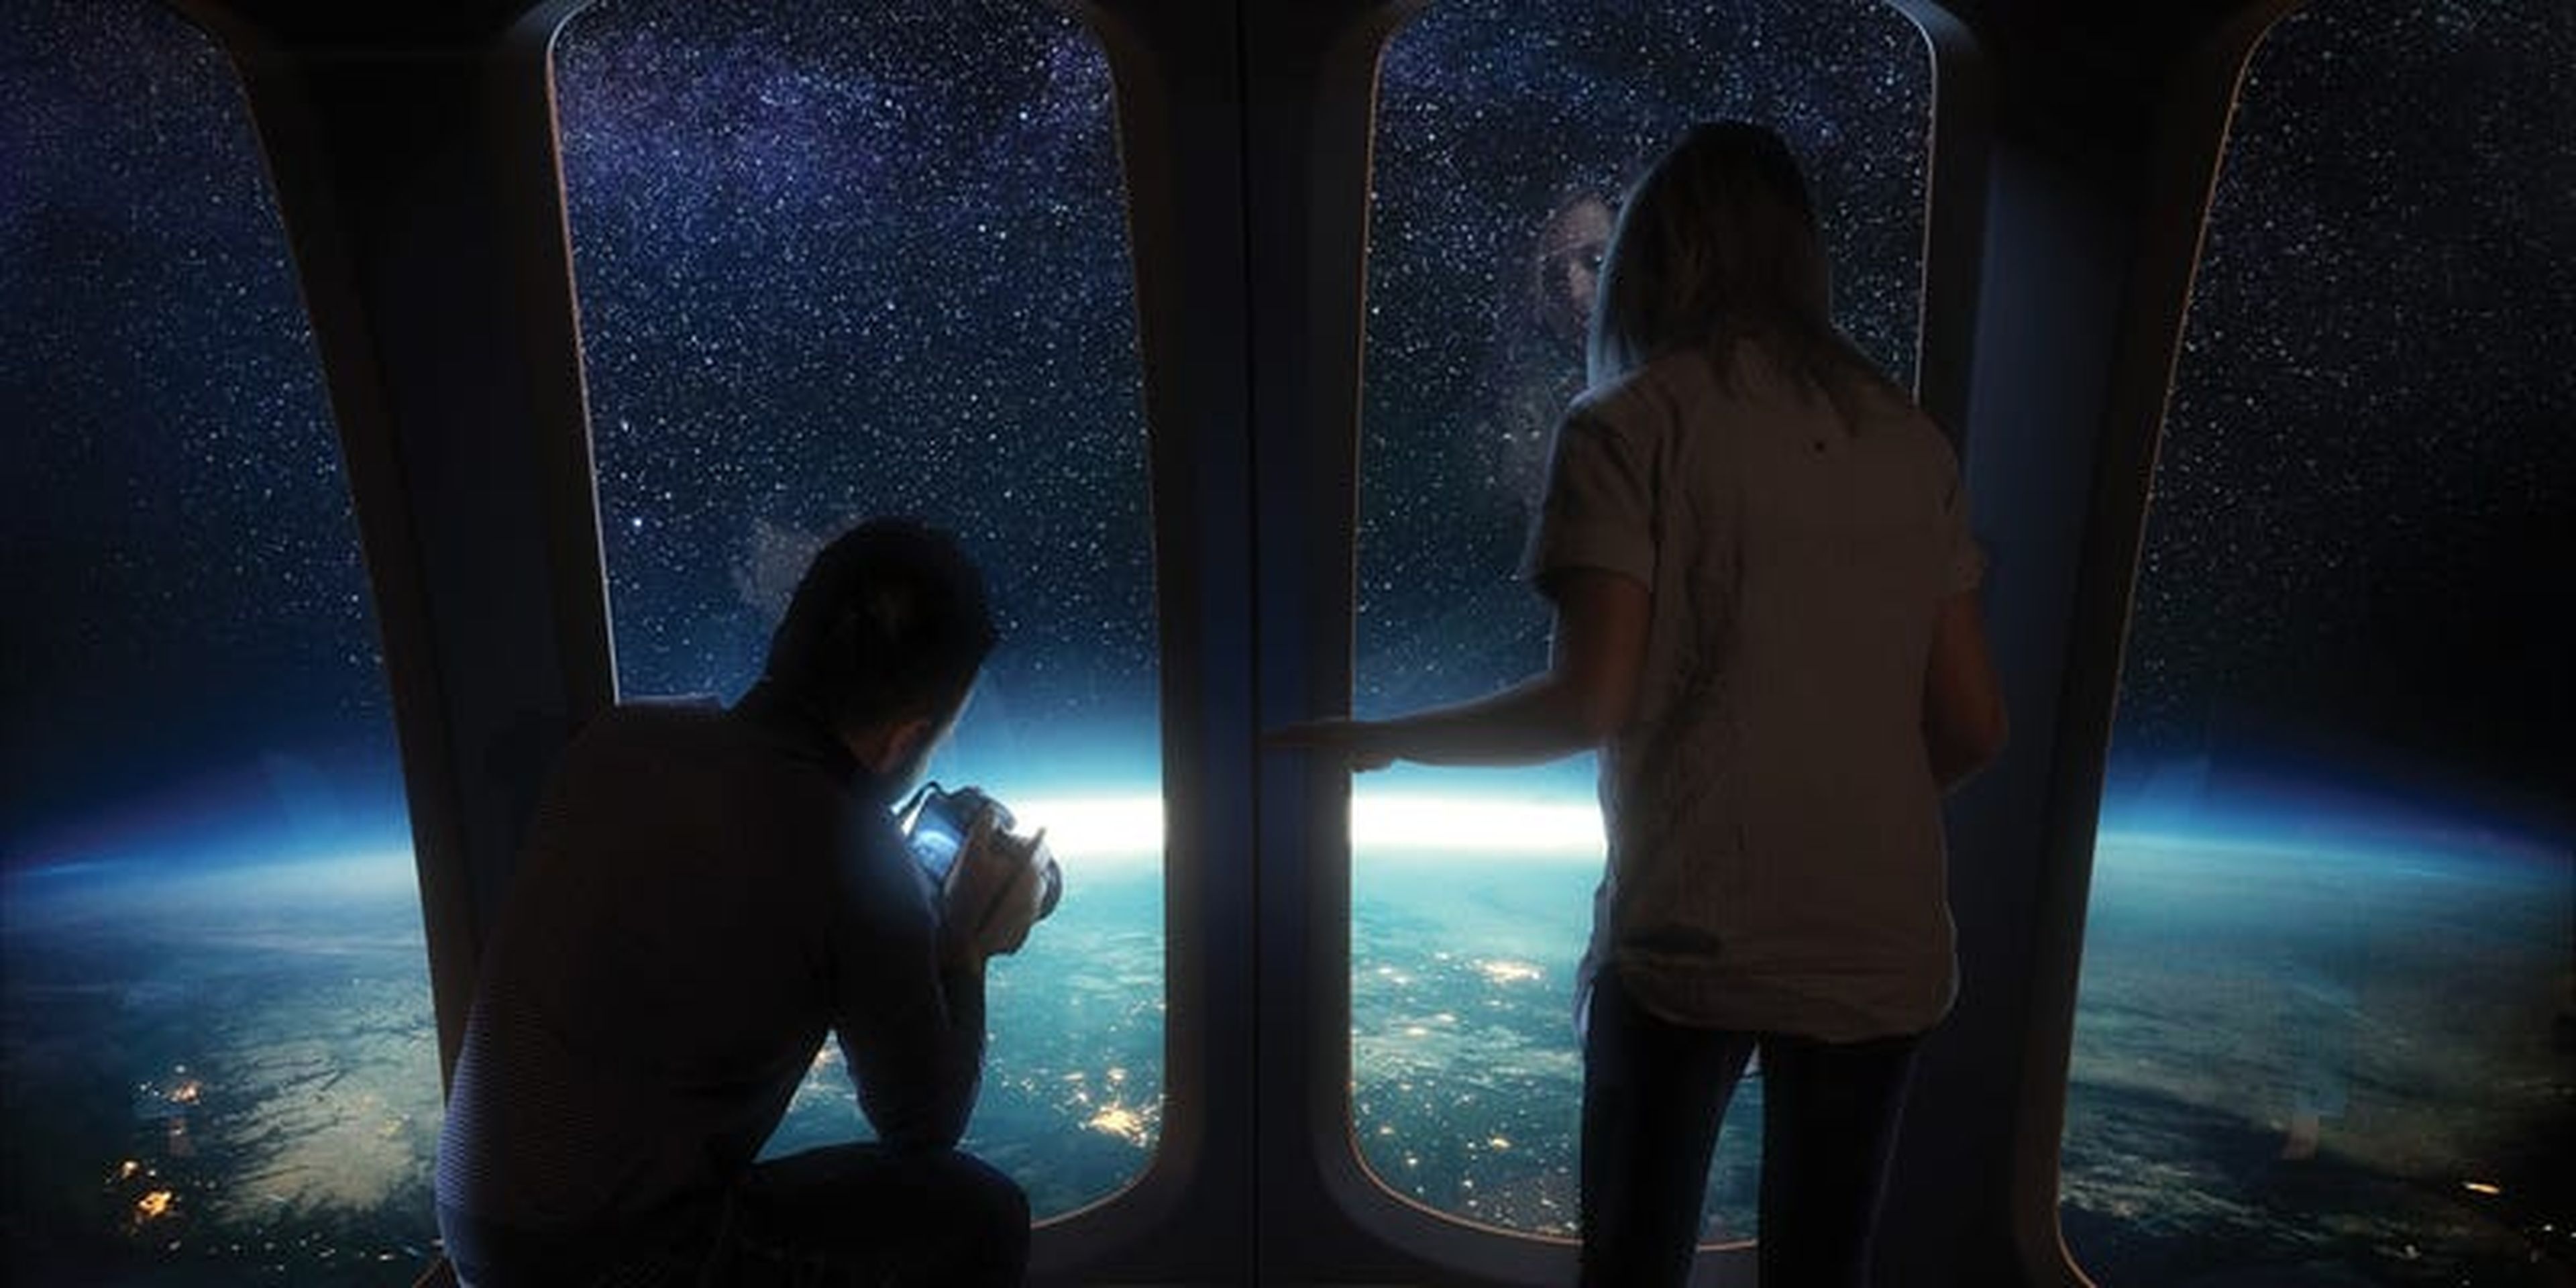 Space Perspective incluirá ventana anti-brillo en su nave espacial.